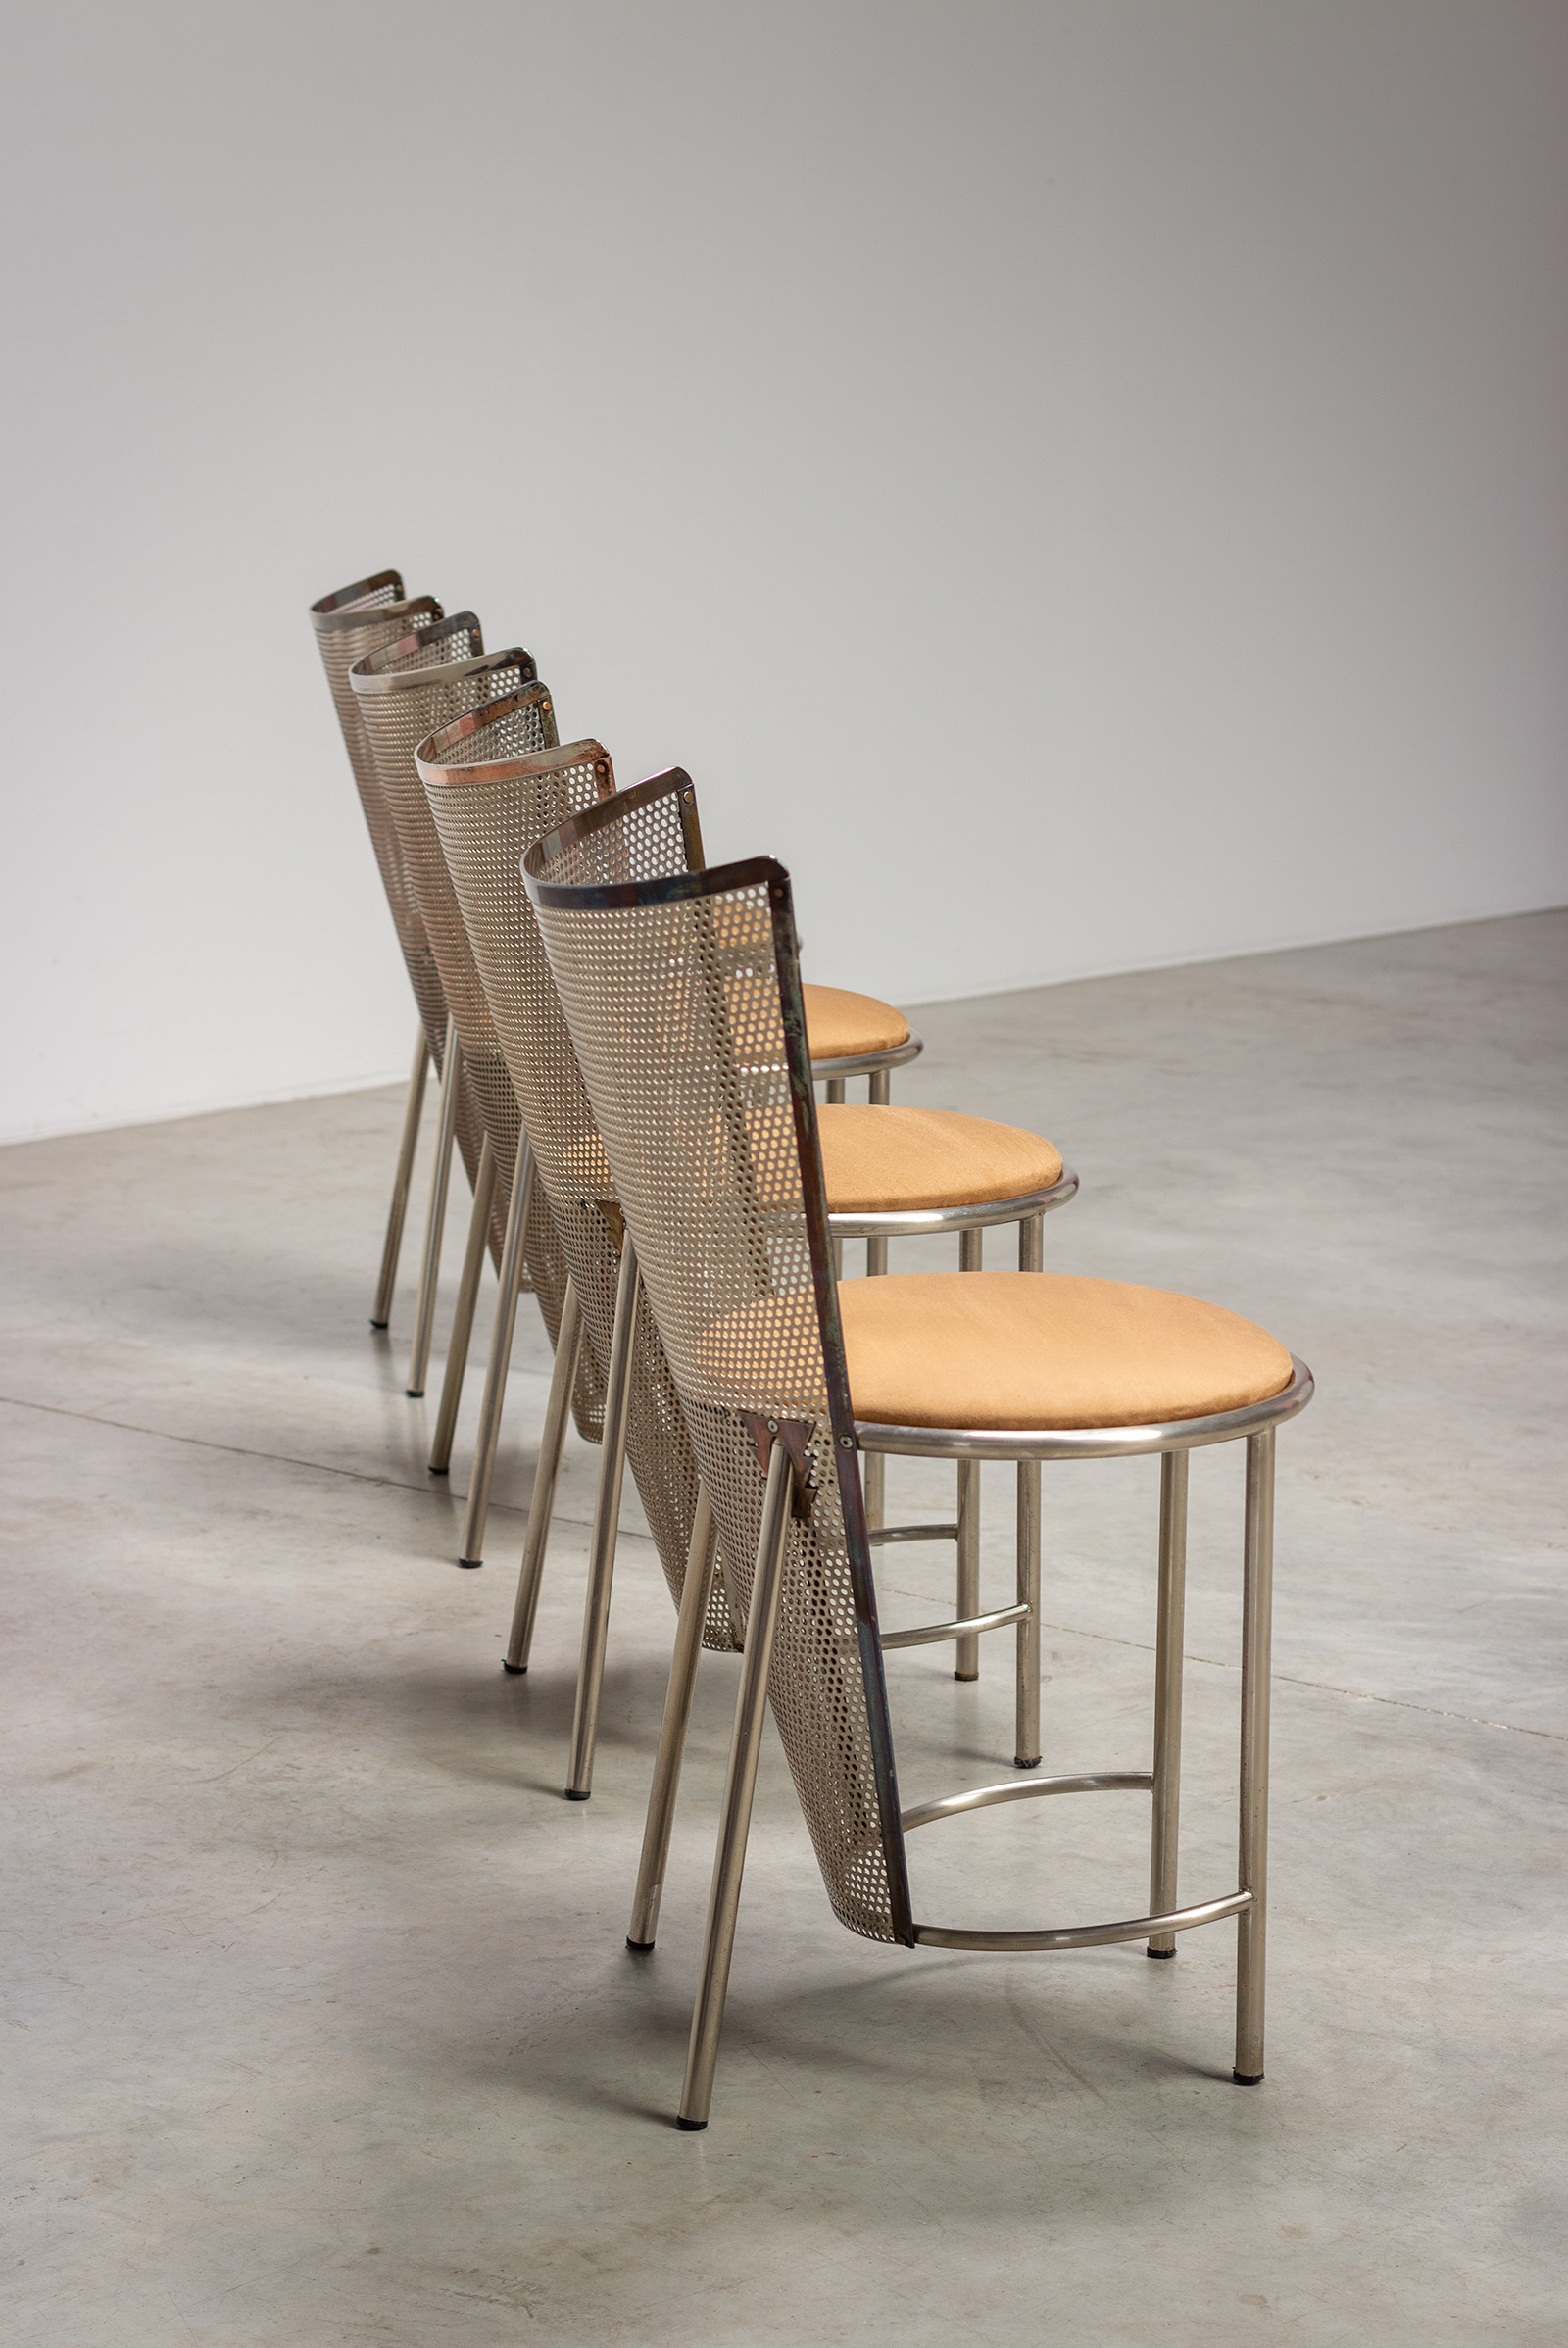 Frans Van Praet four postmodern Sevilla chairs for the world expo 92 img 5